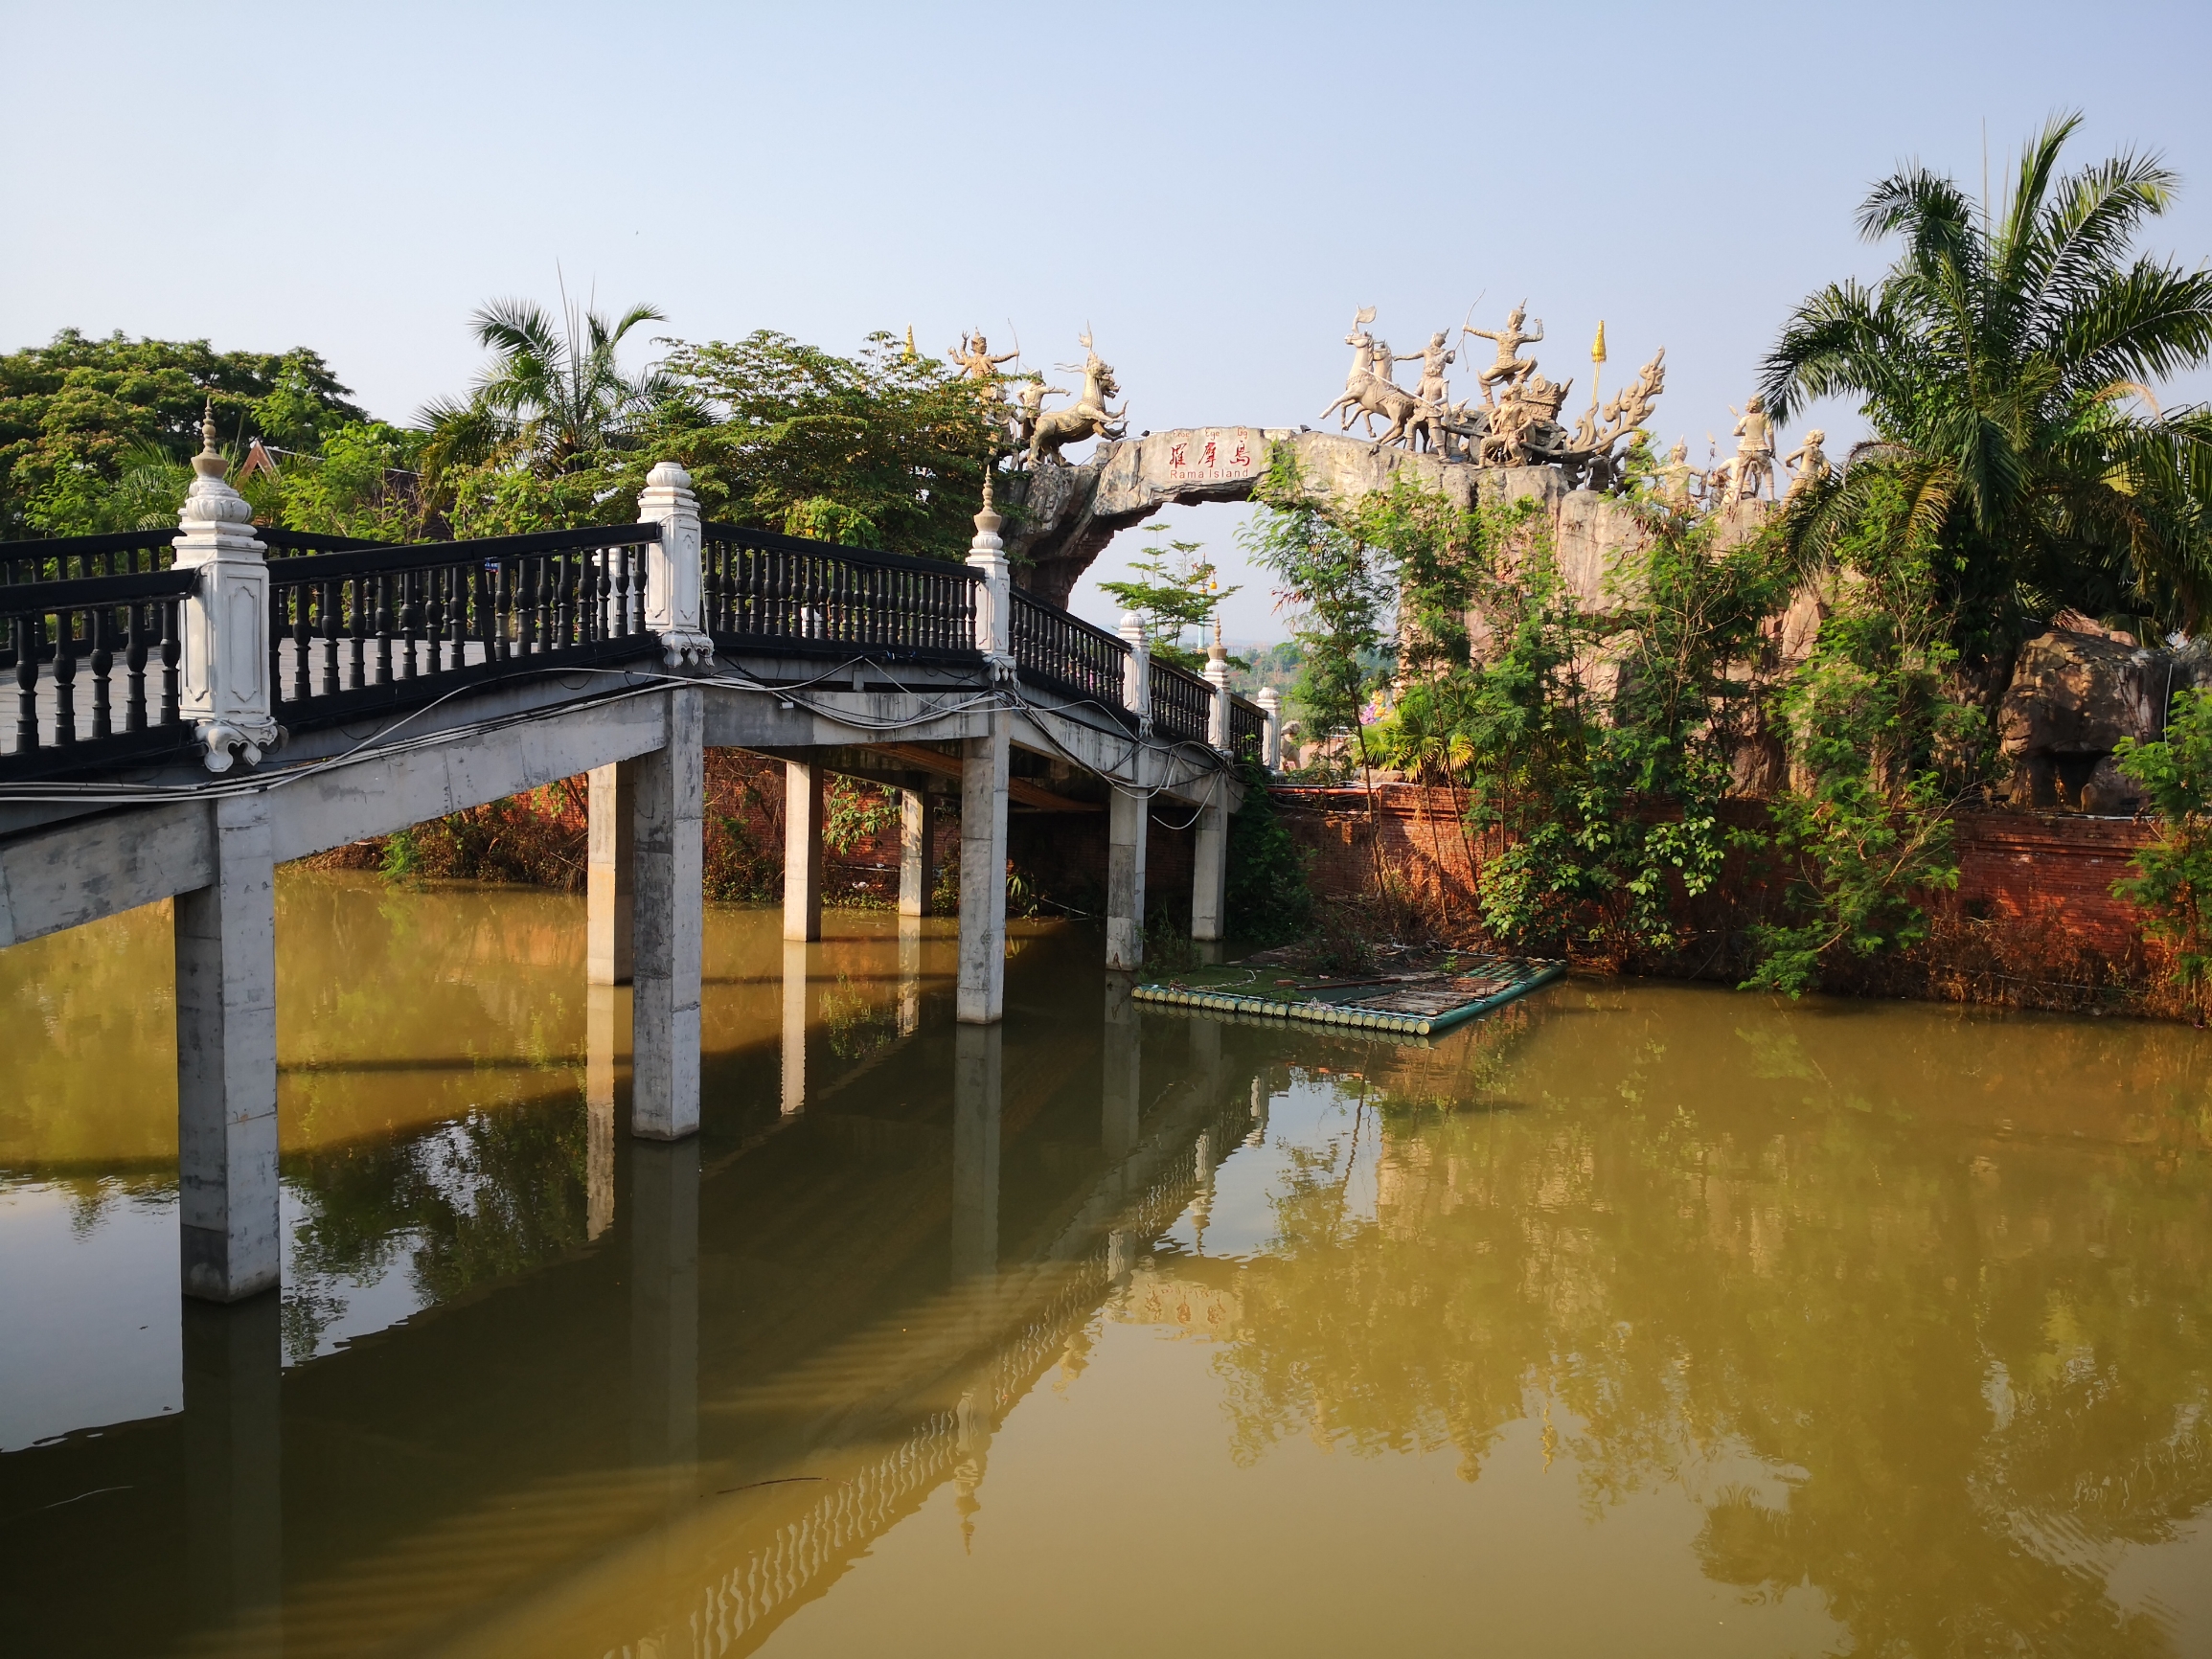 水道蜿蜒，东南亚风情建筑，独具异域风情。